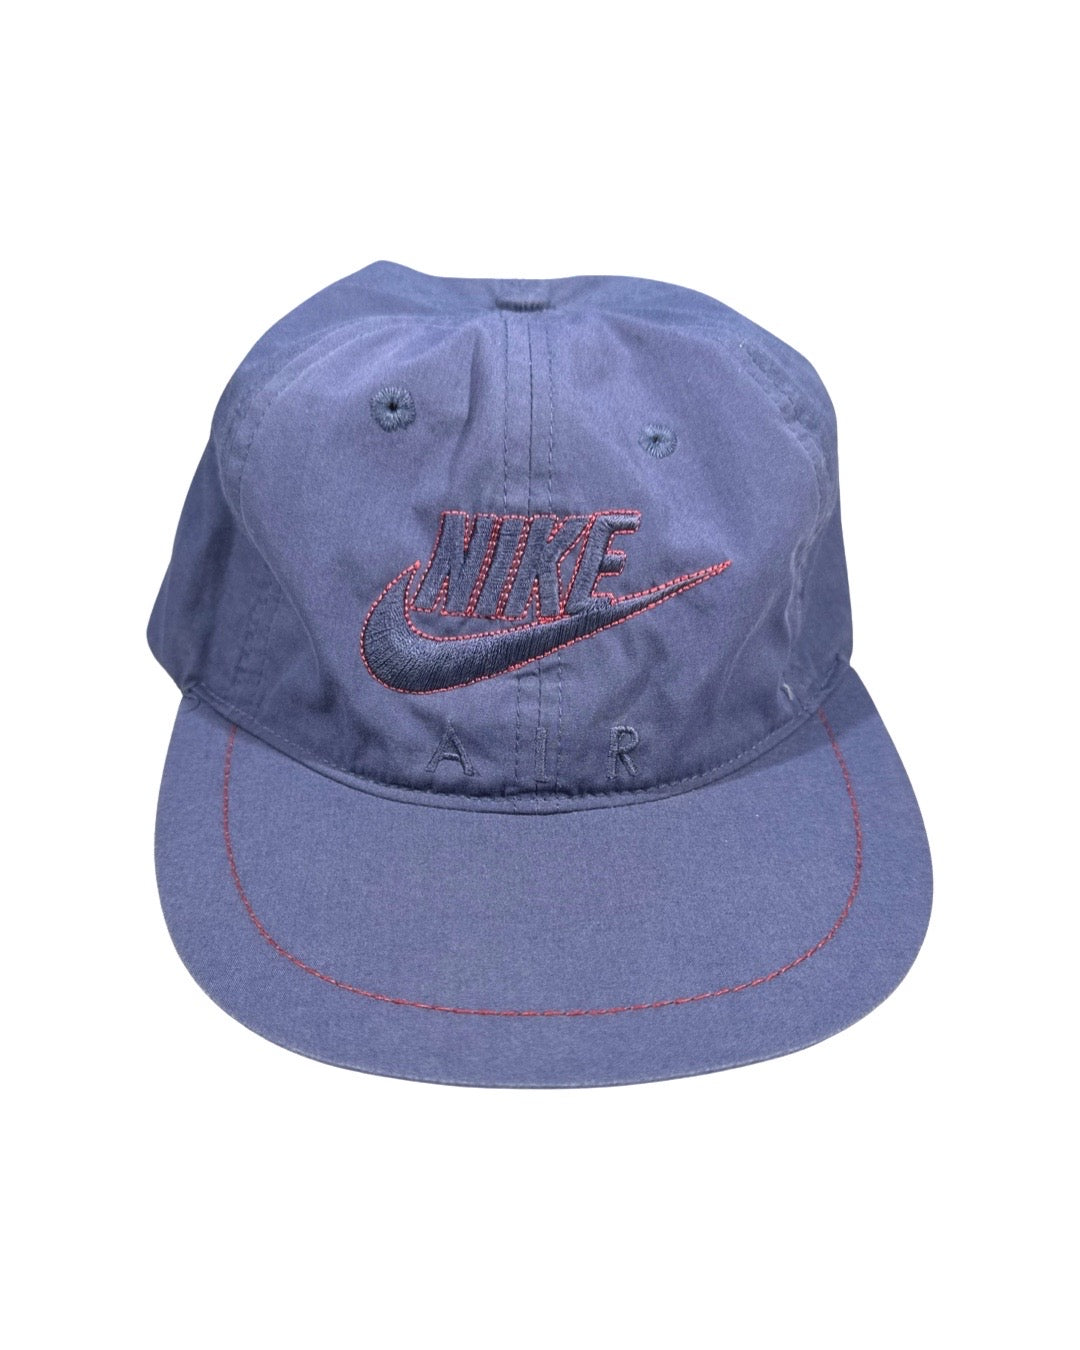 Vintage Nike Air Cap